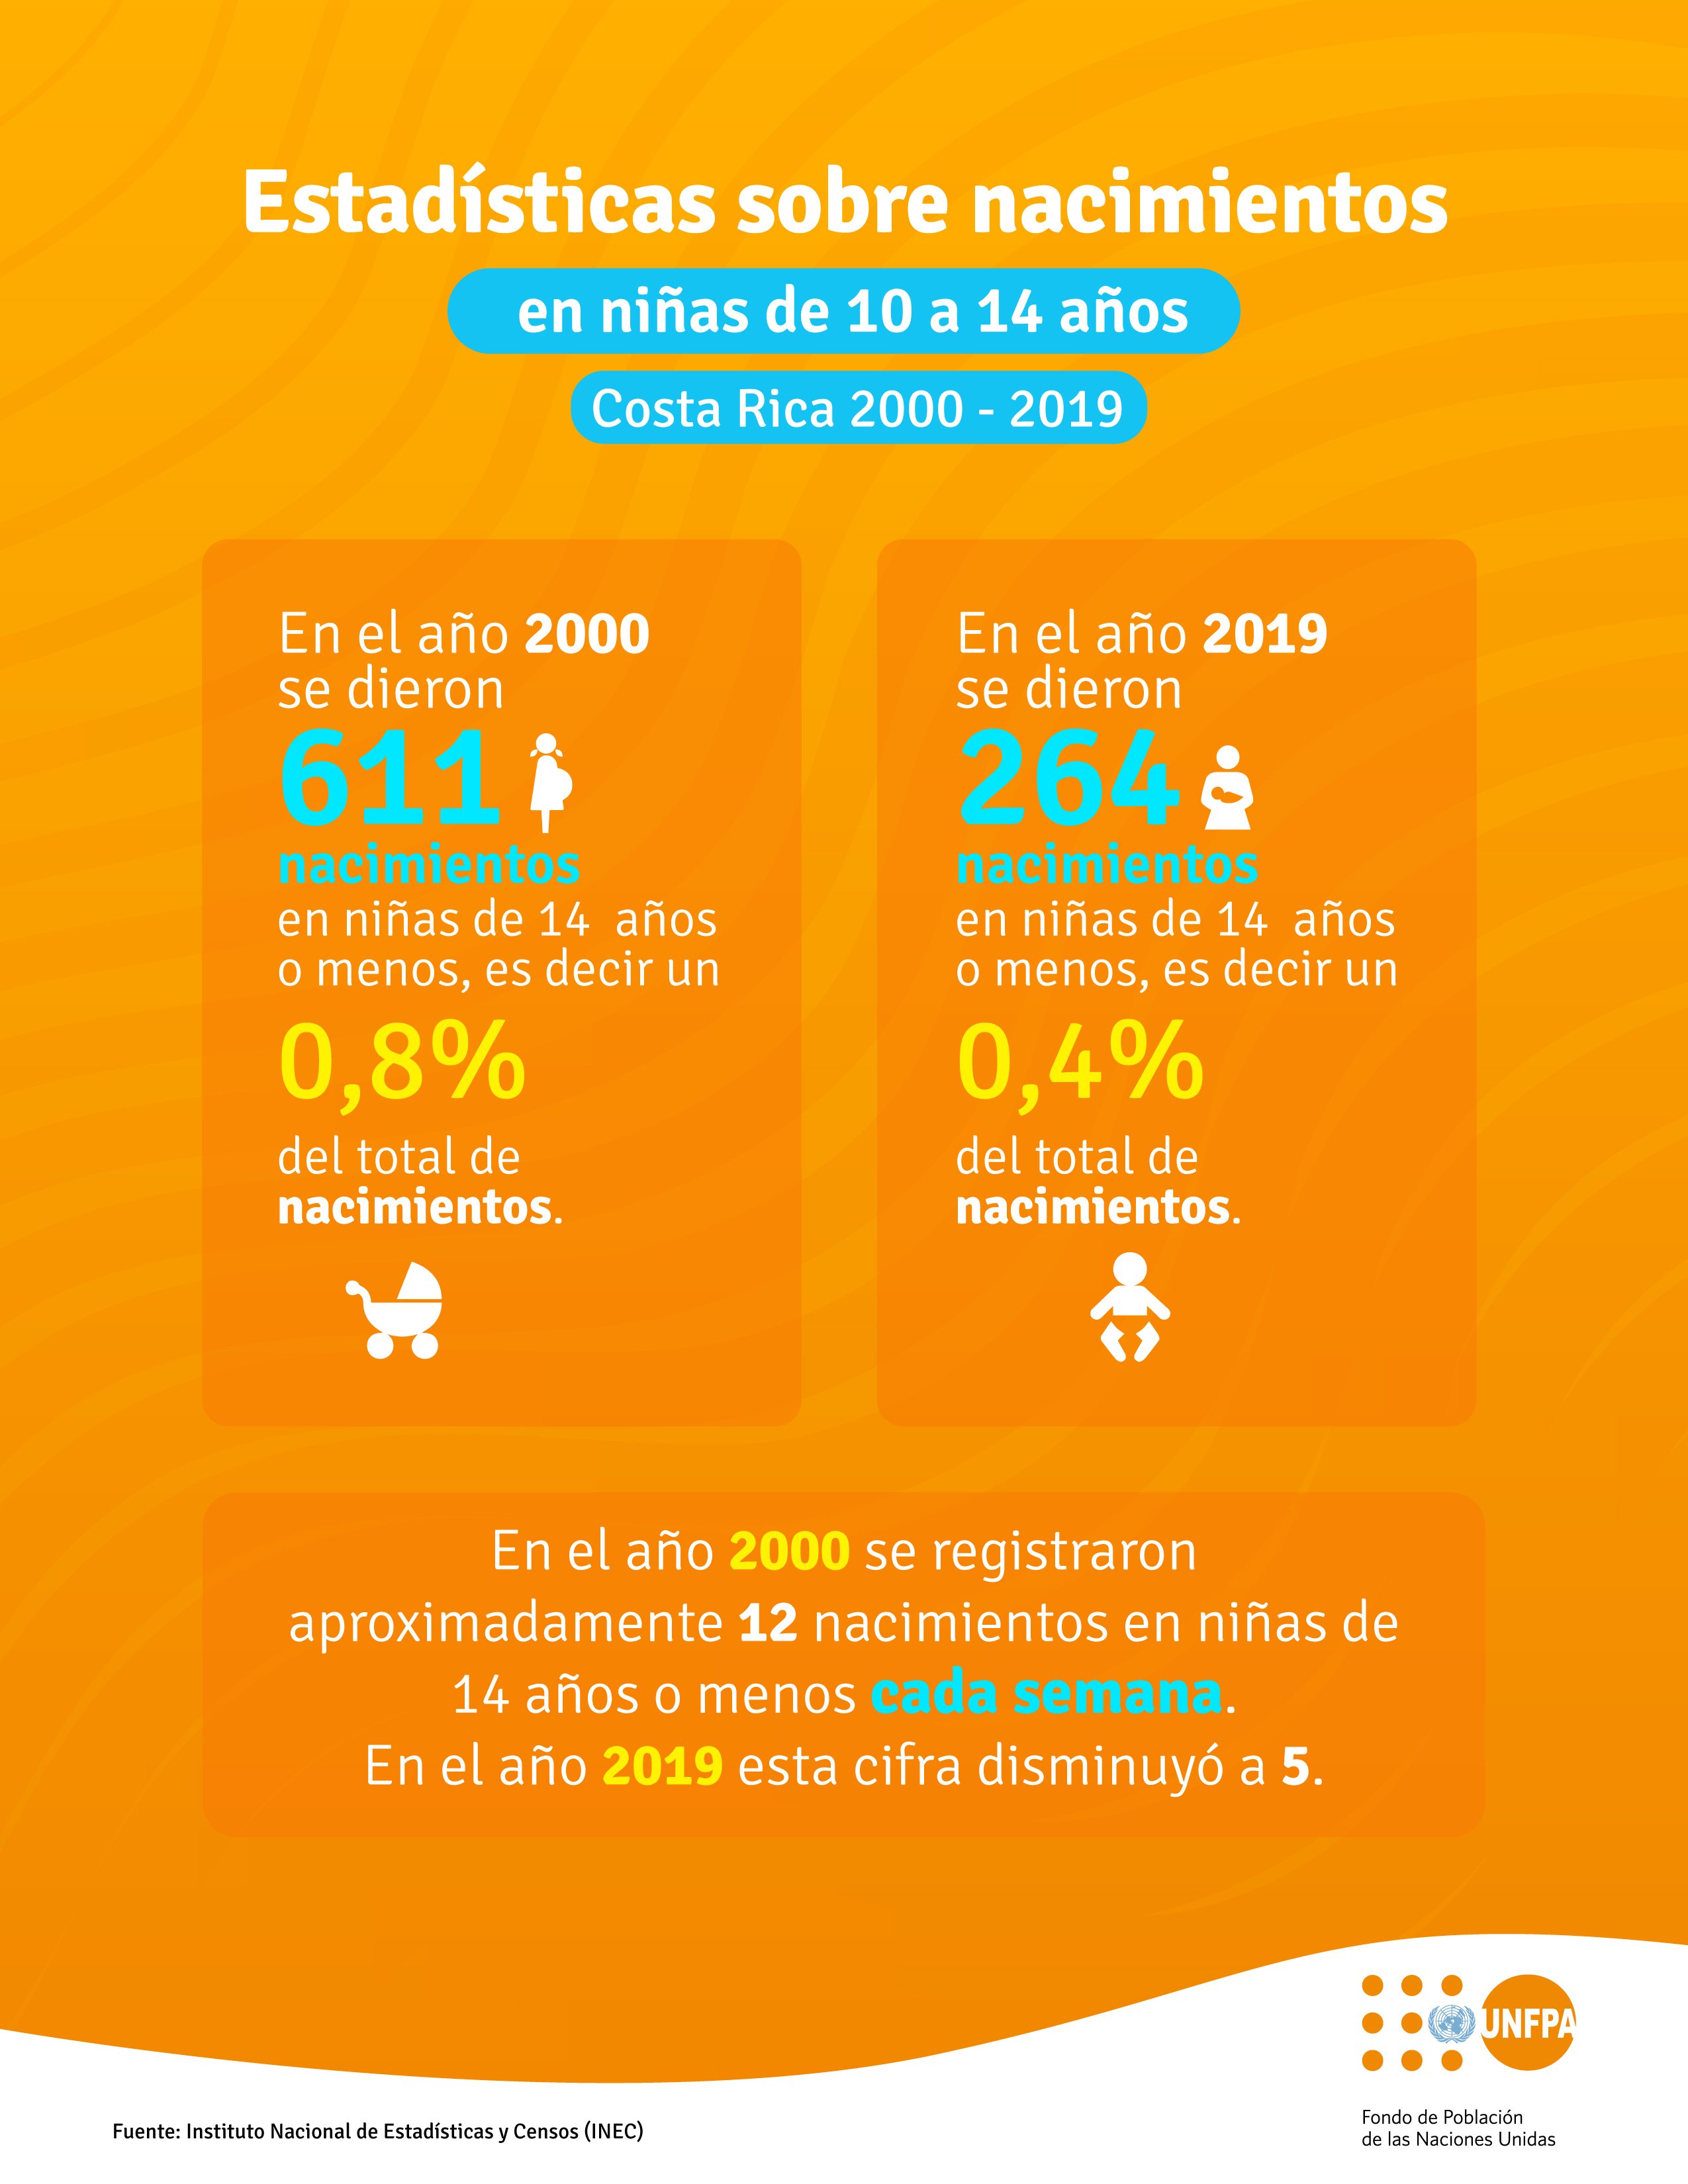 Estadísticas sobre nacimientos en niñas de 10 a 19 años en Costa Rica 2000-2019